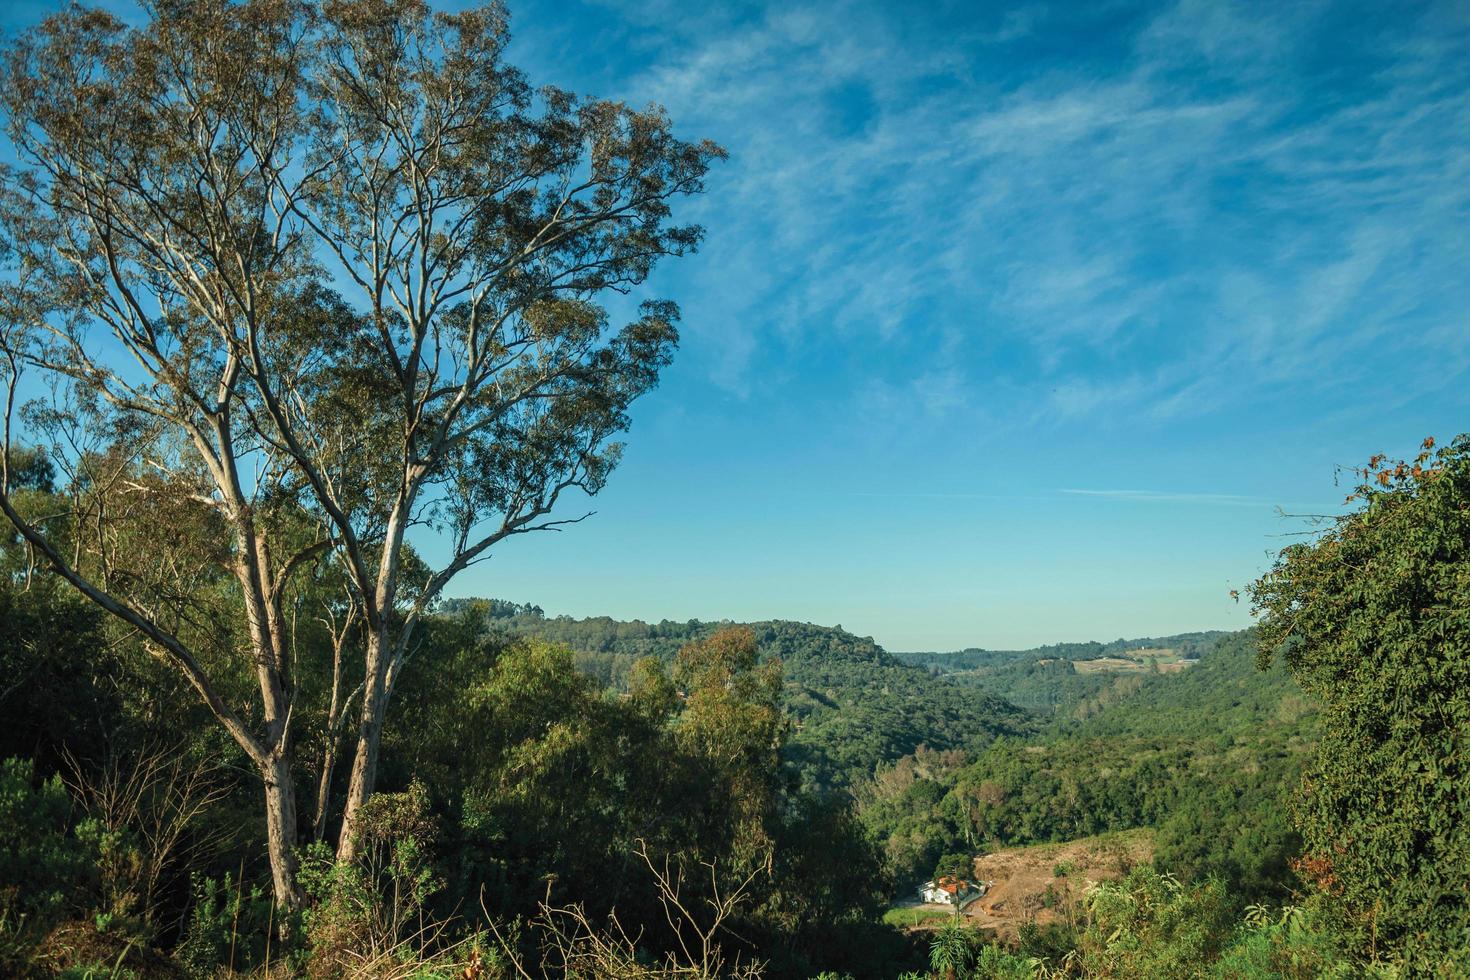 paisaje rural del valle con colinas cubiertas de bosque, granja y gran árbol en primer plano cerca de bento goncalves. una ciudad amigable en el sur de Brasil famosa por su producción de vino. foto